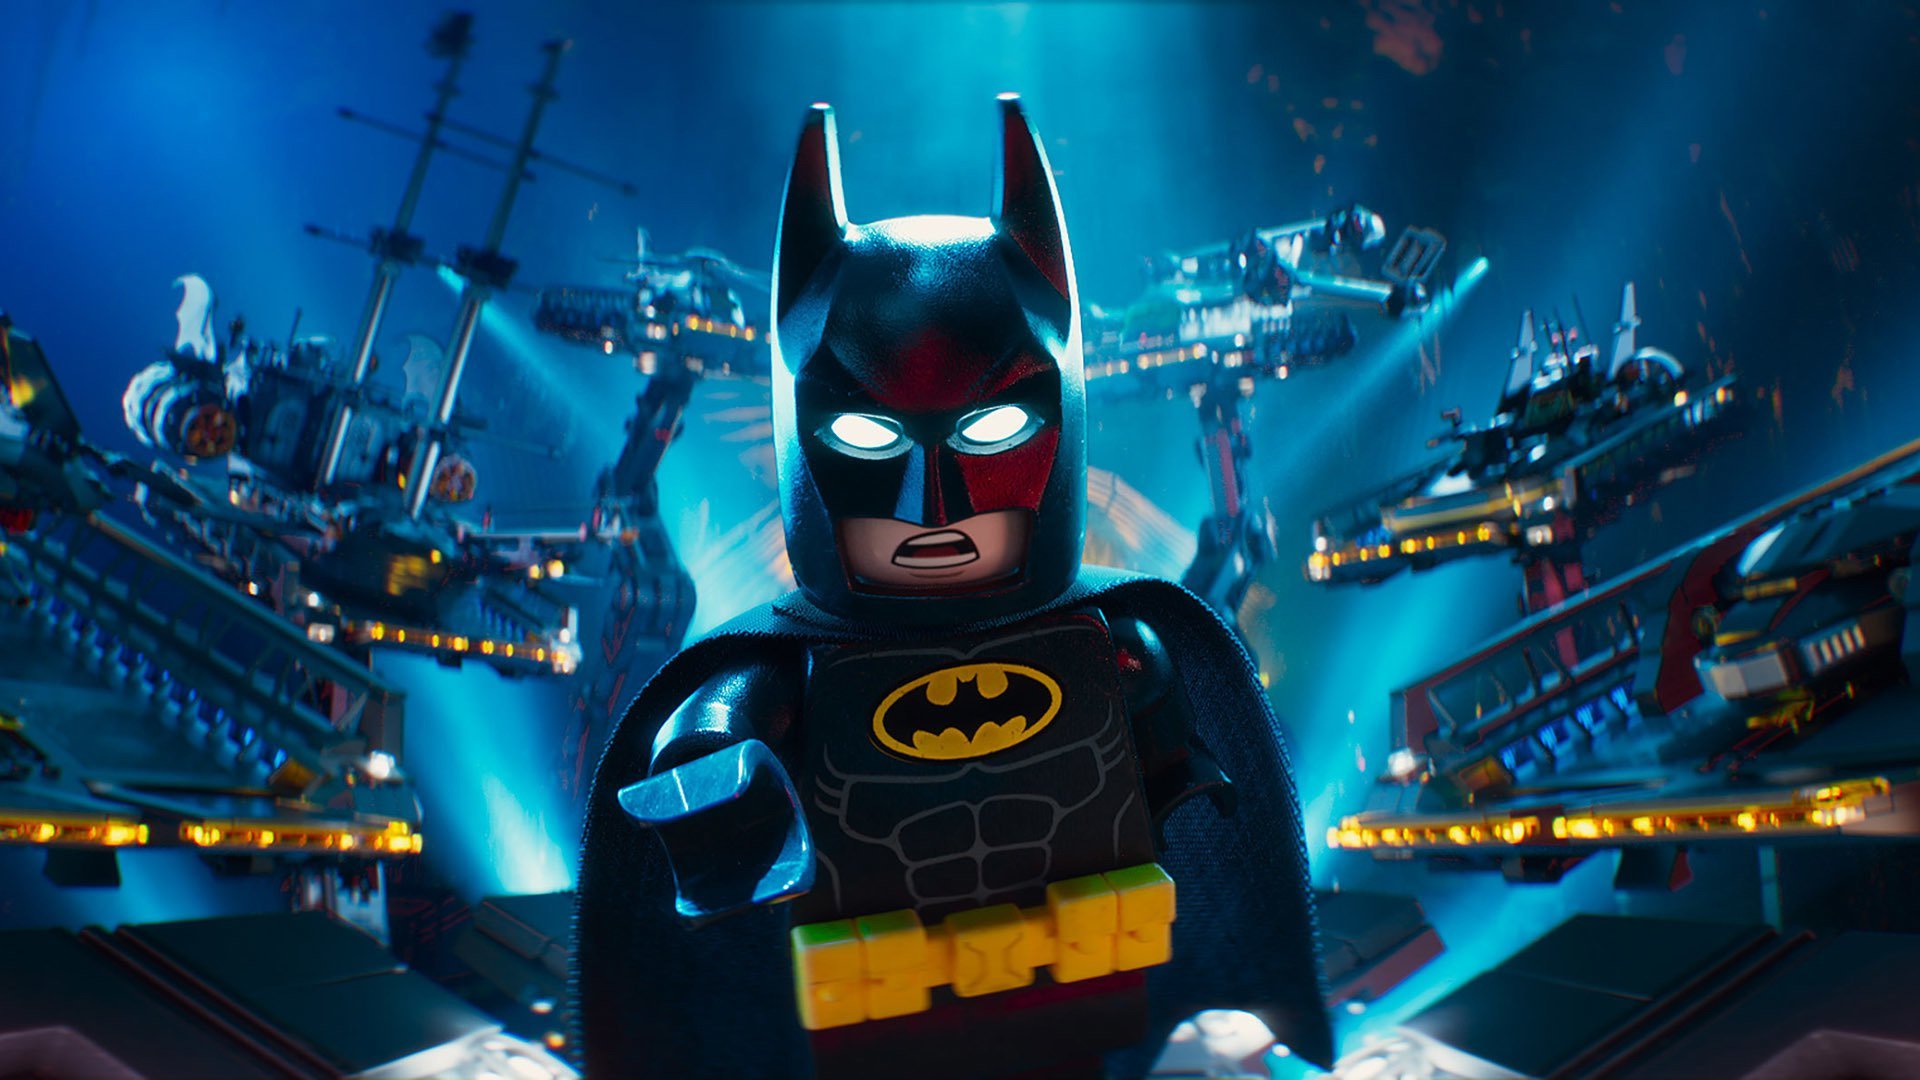 ლეგო ფილმი: ბეტმენი / The LEGO Batman Movie ქართულად